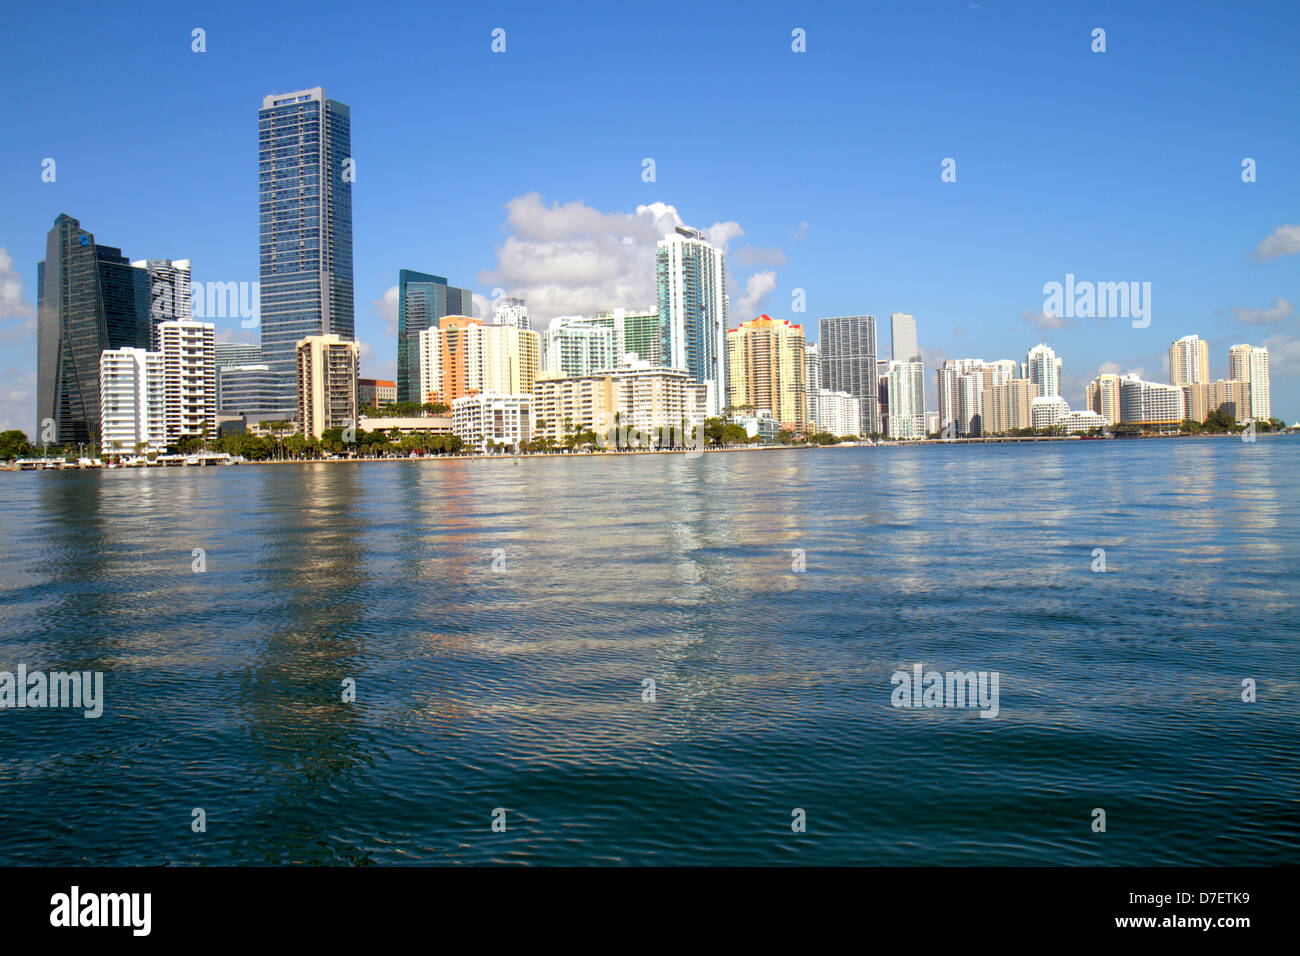 Miami Florida, Biscayne Bay eau, ville horizon paysage urbain, Brickell, centre-ville, eau, gratte-ciel, gratte-ciel de hauteur gratte-ciel bâtiment bâtiments condom Banque D'Images